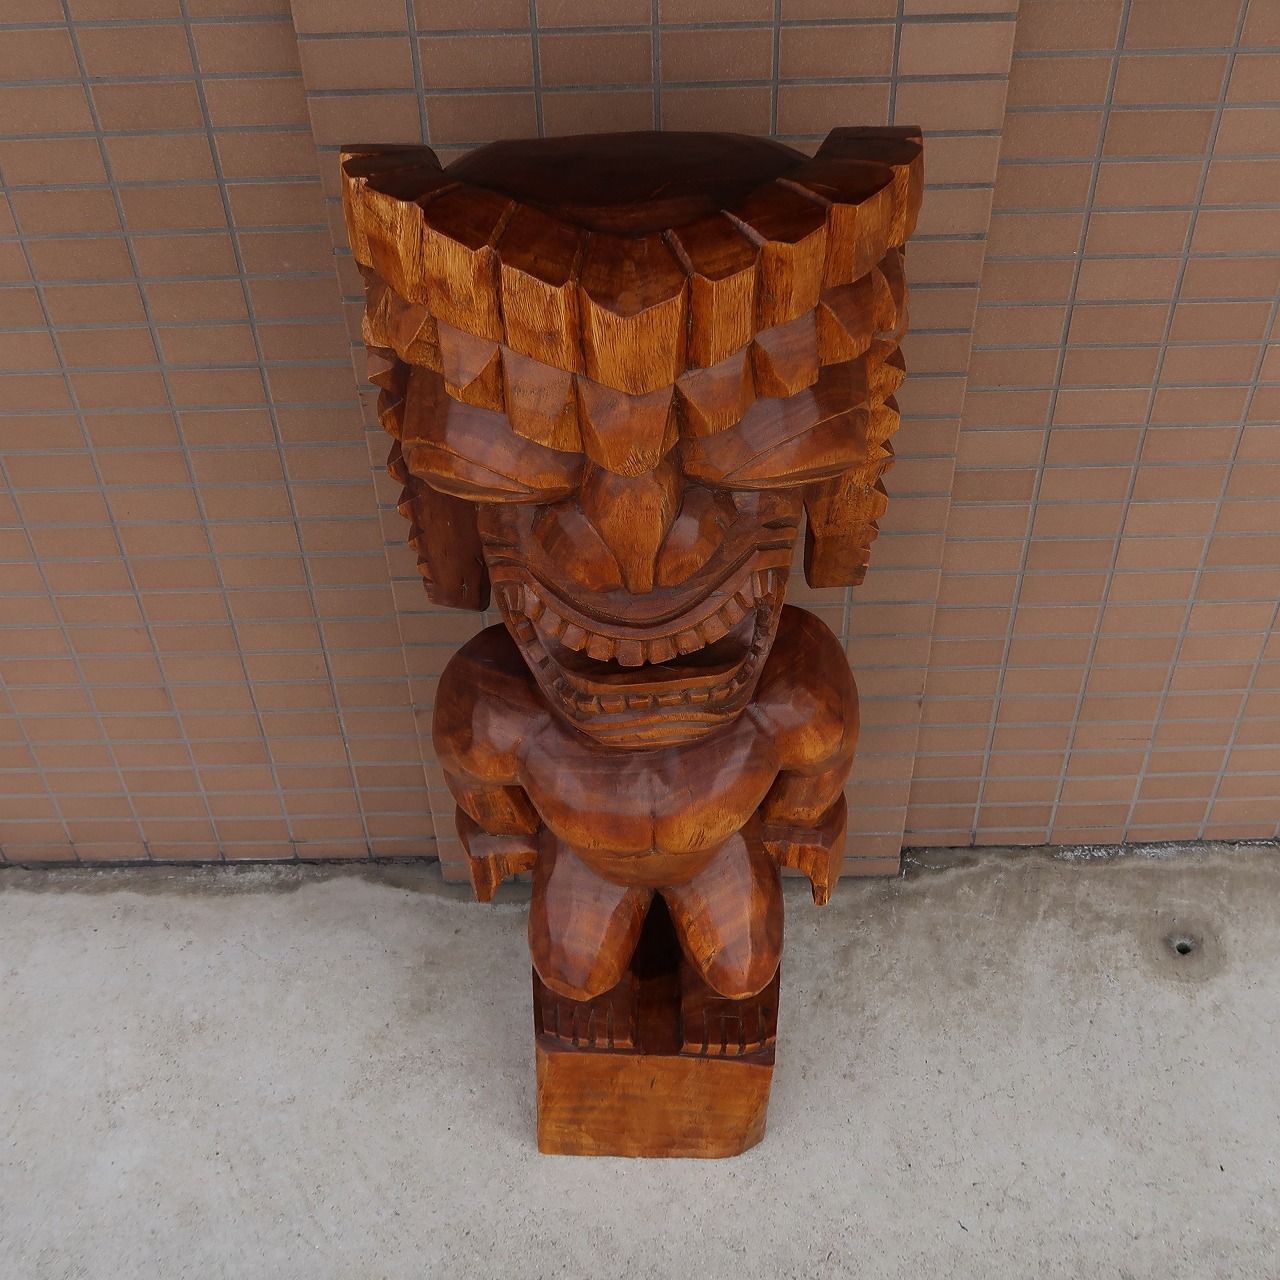 ティキの木彫り ティキ クー TIKI KU 120cm 木製スワール無垢材 TIKI木彫り ティキ像 チィキ像 戦いの神 オブジェ ハワイの神様  ハワイアン雑貨 ハワイの置物 Hawaiian 1m20cm 350283